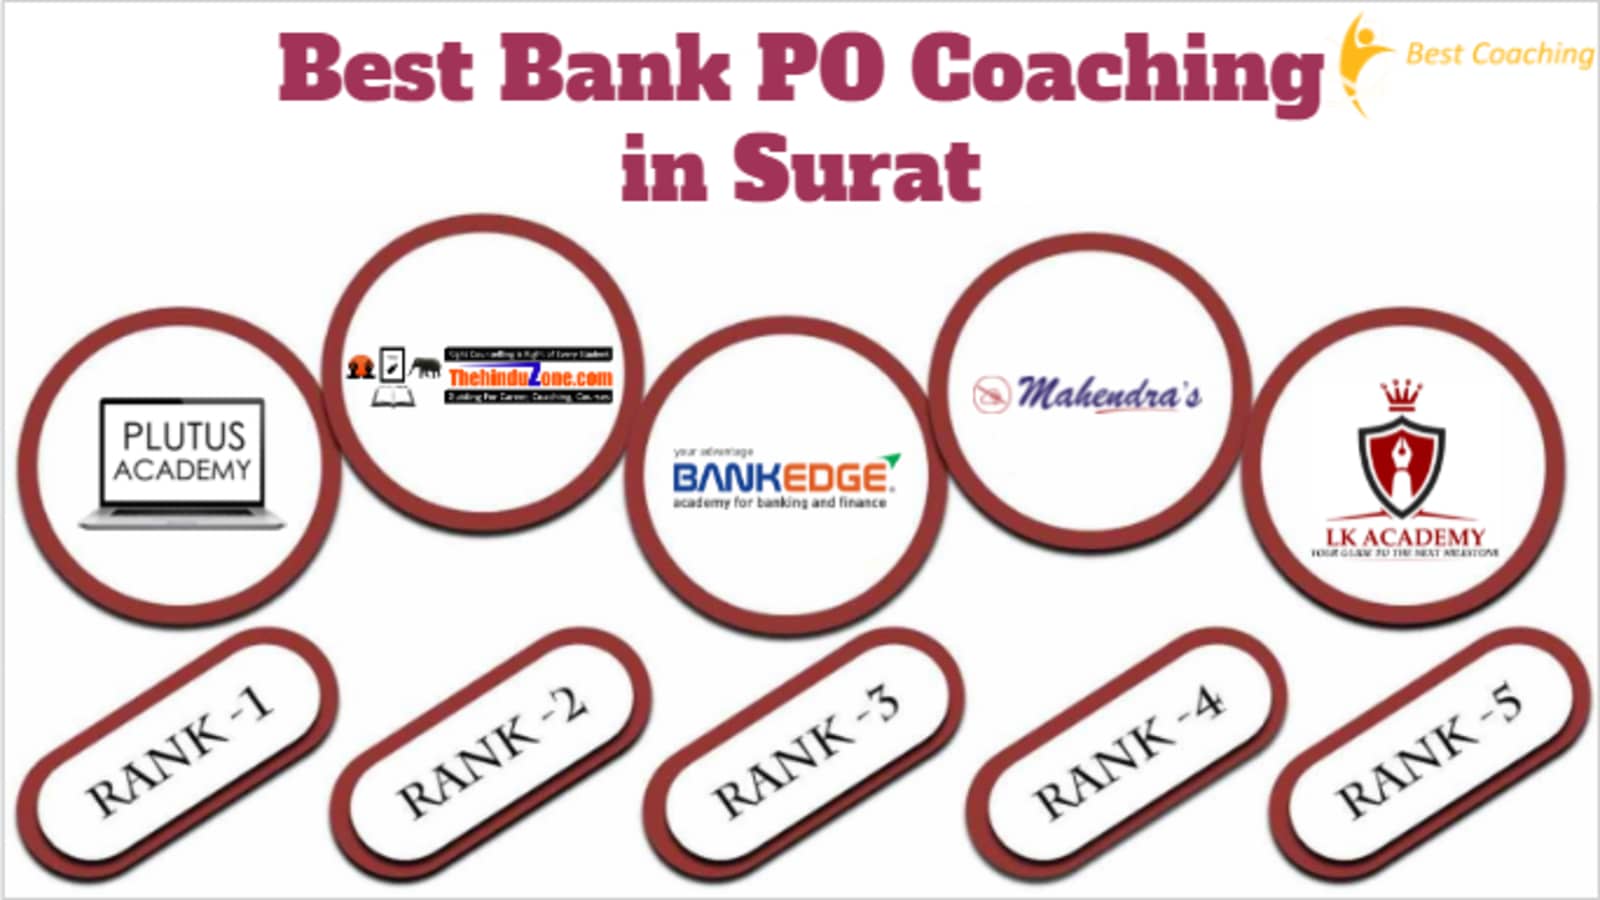 Best Bank PO Coaching in Surat